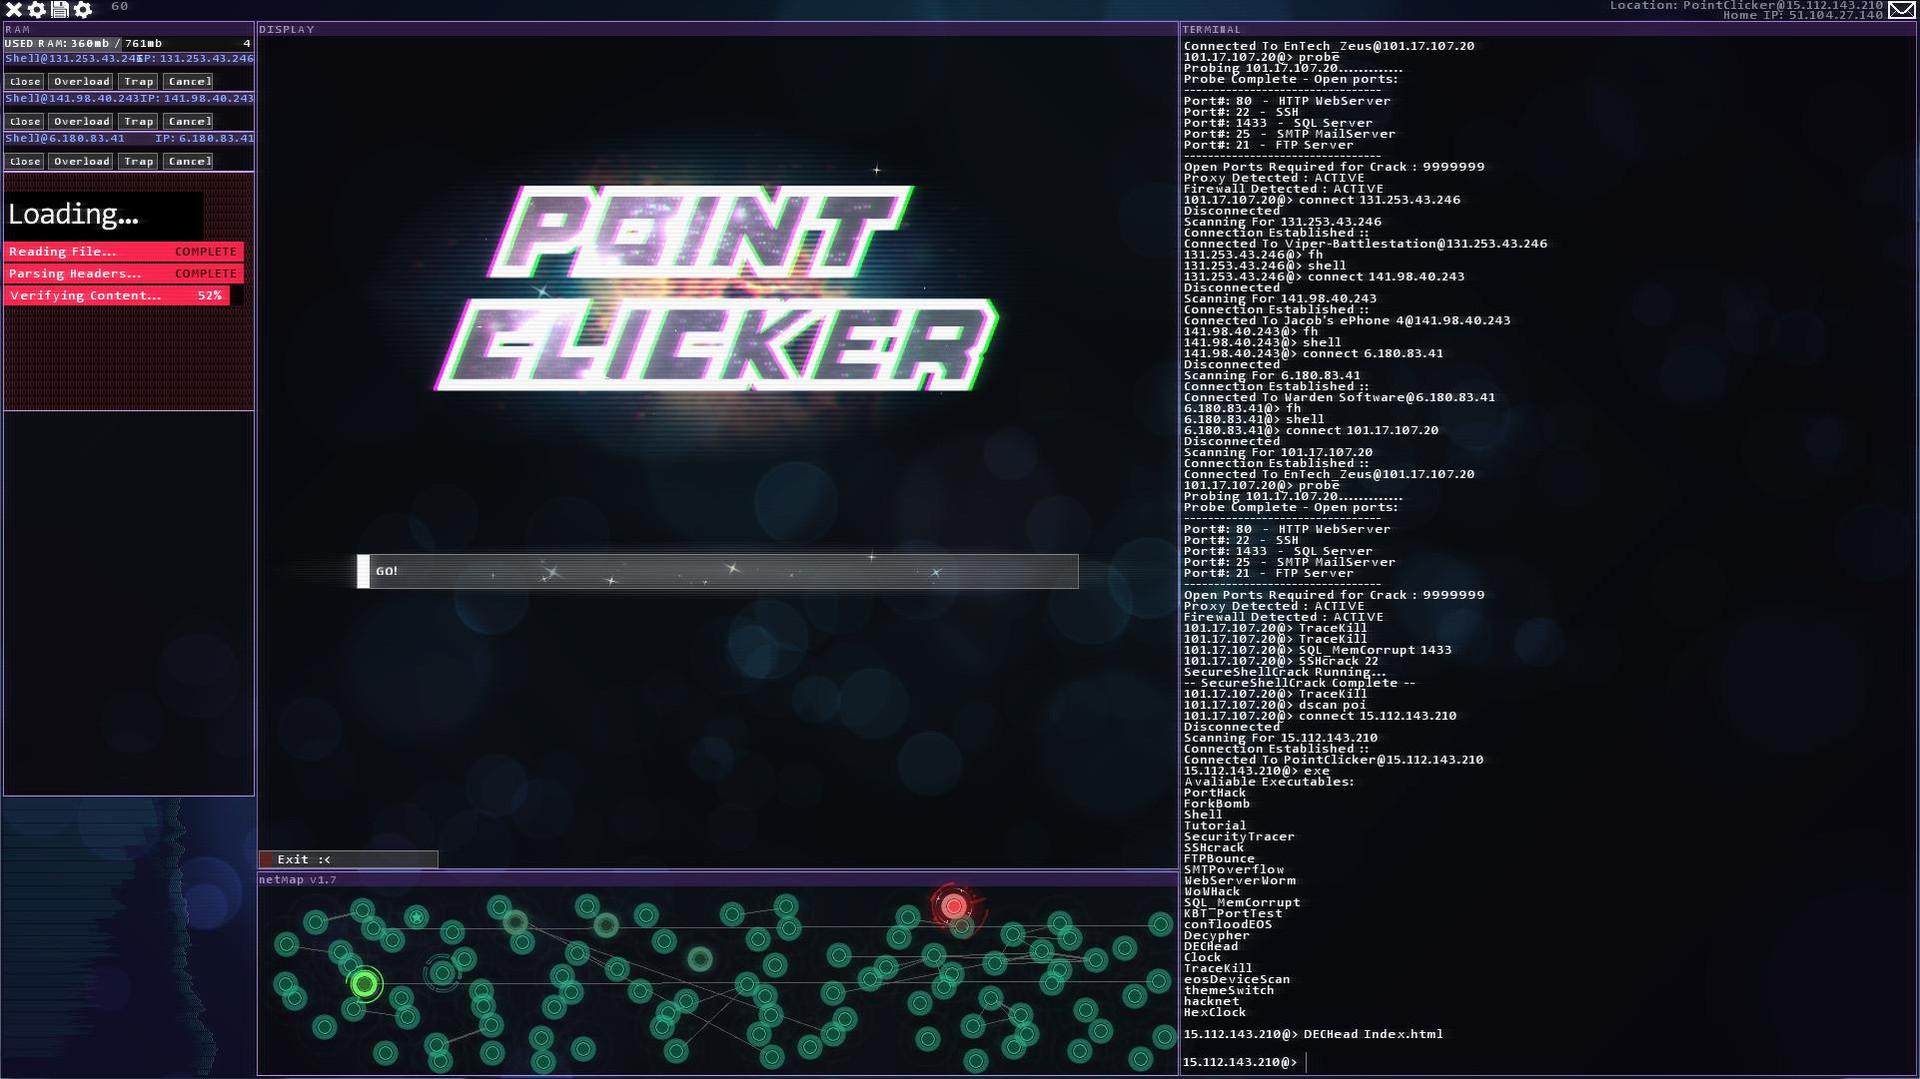 Hacknet videojuego: Plataformas y DLCs